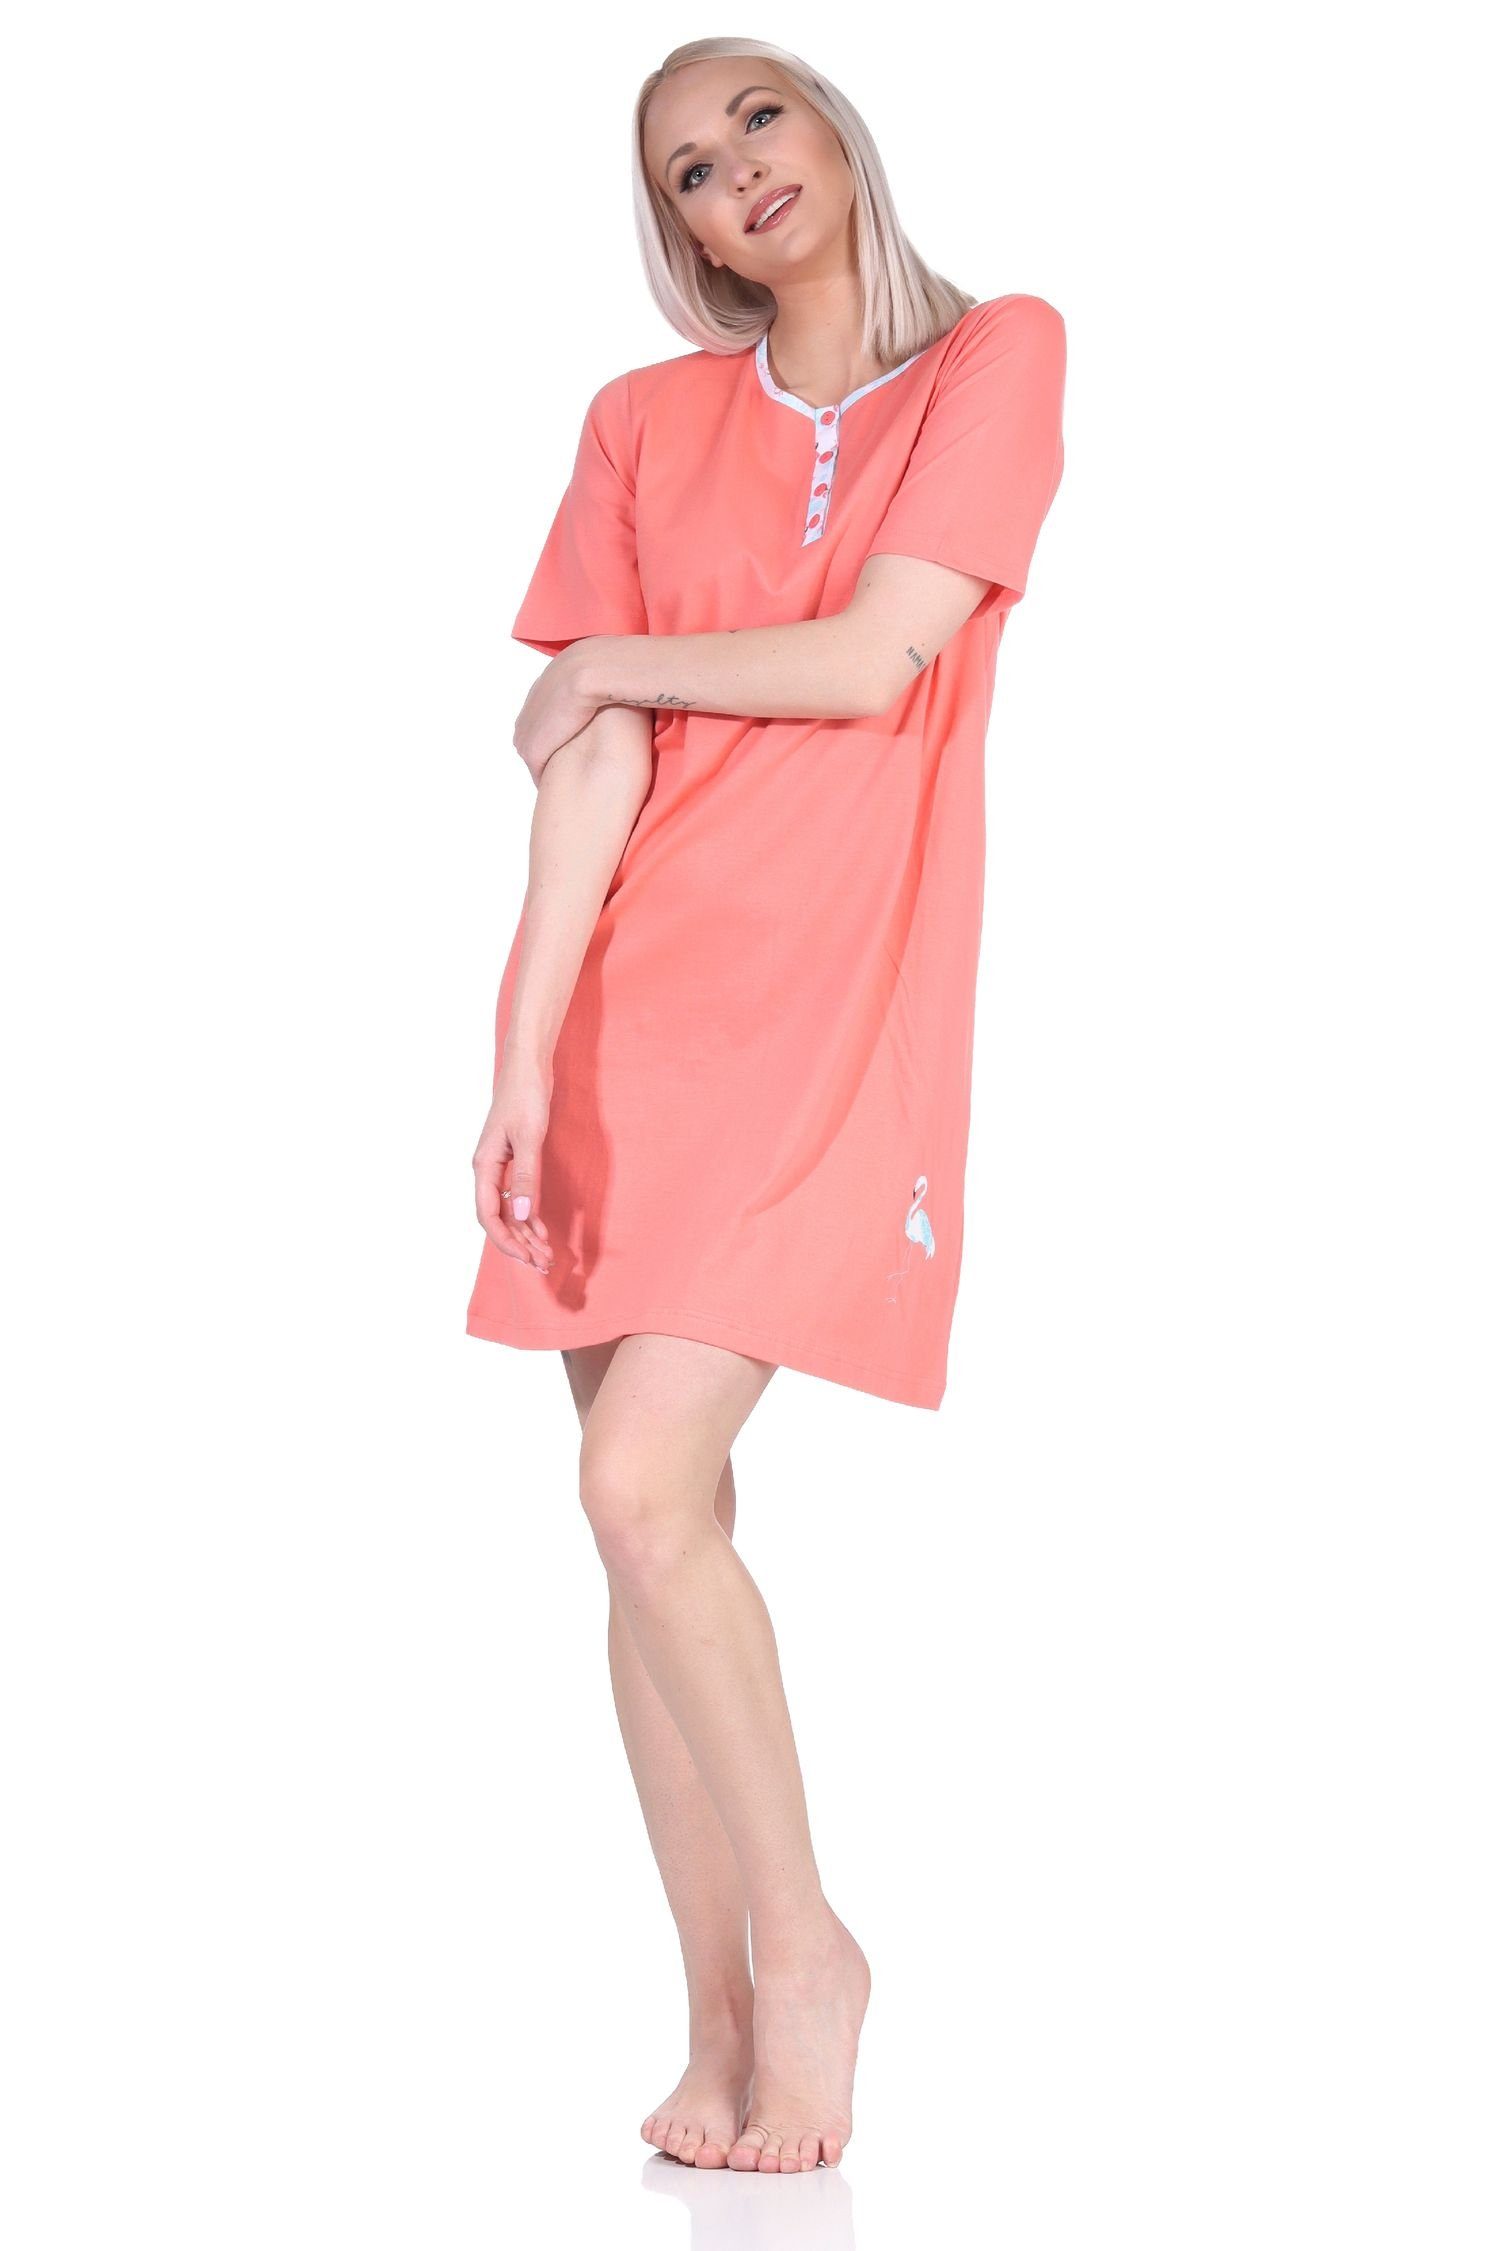 Normann Nachthemd Damen kurzarm apricot und Knopfleiste mit Motiv Nachthemd am Hals Flamingo